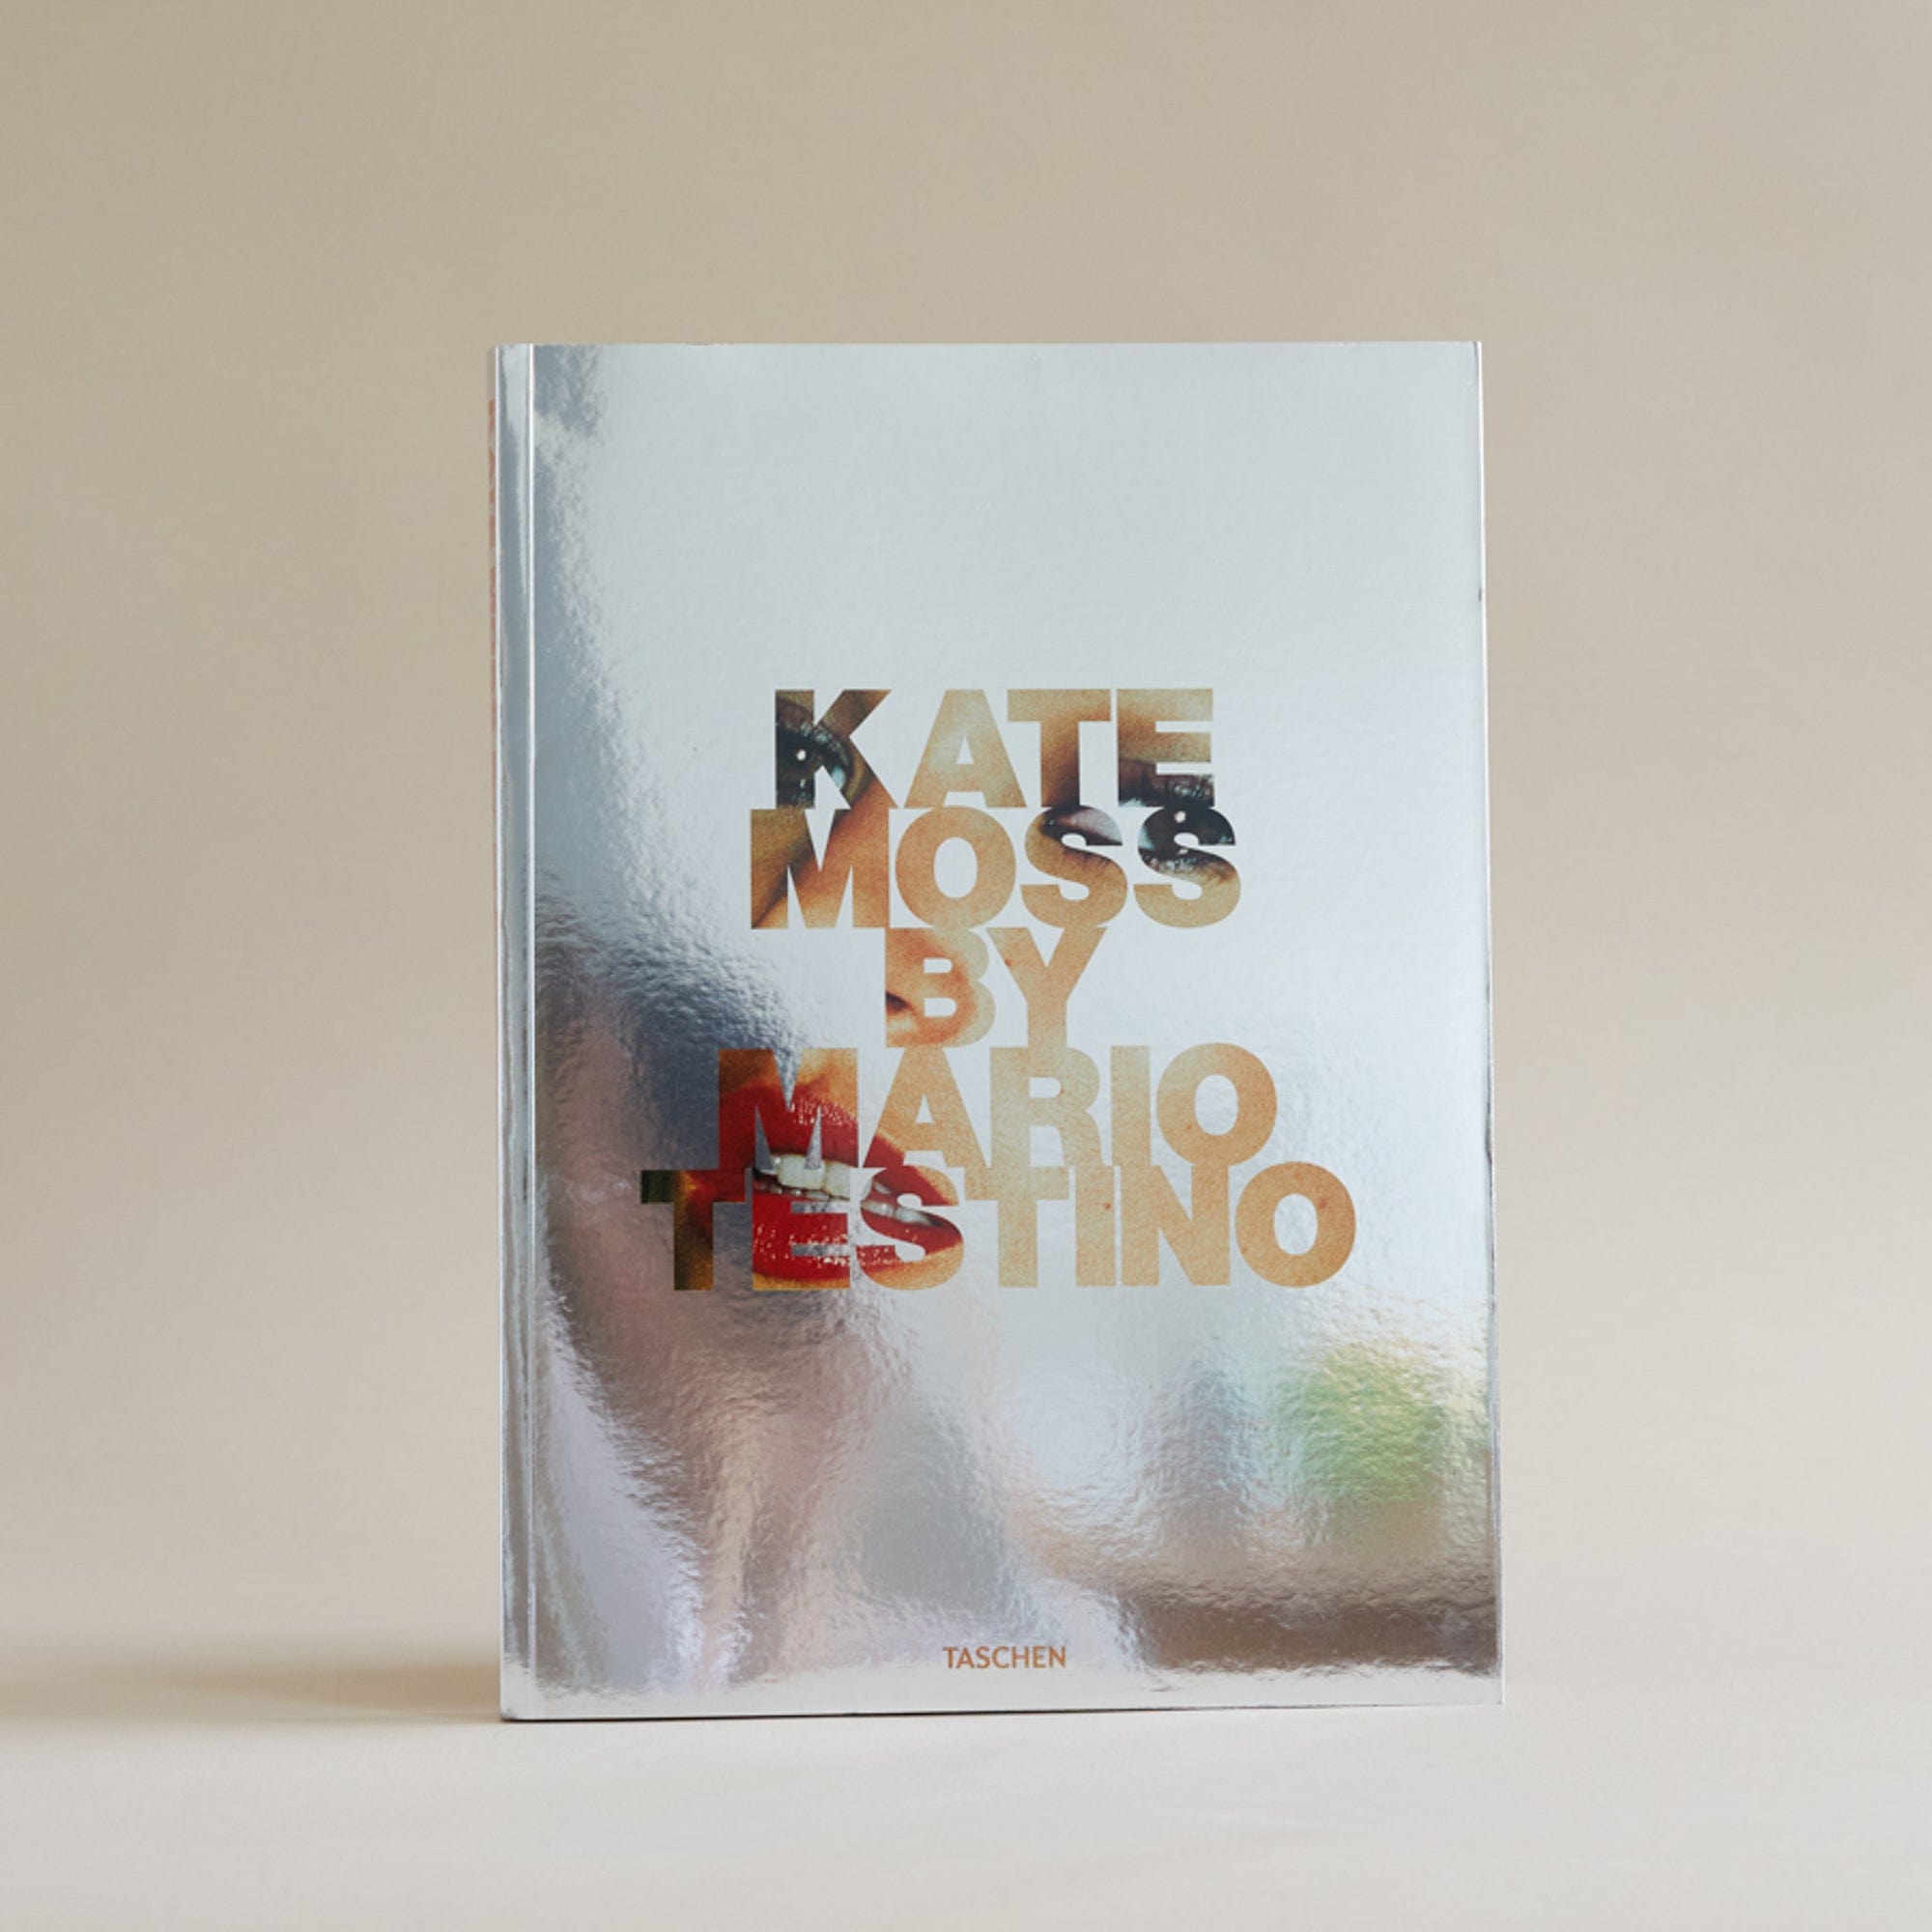 Taschen Design Kate Moss by Mario Testino